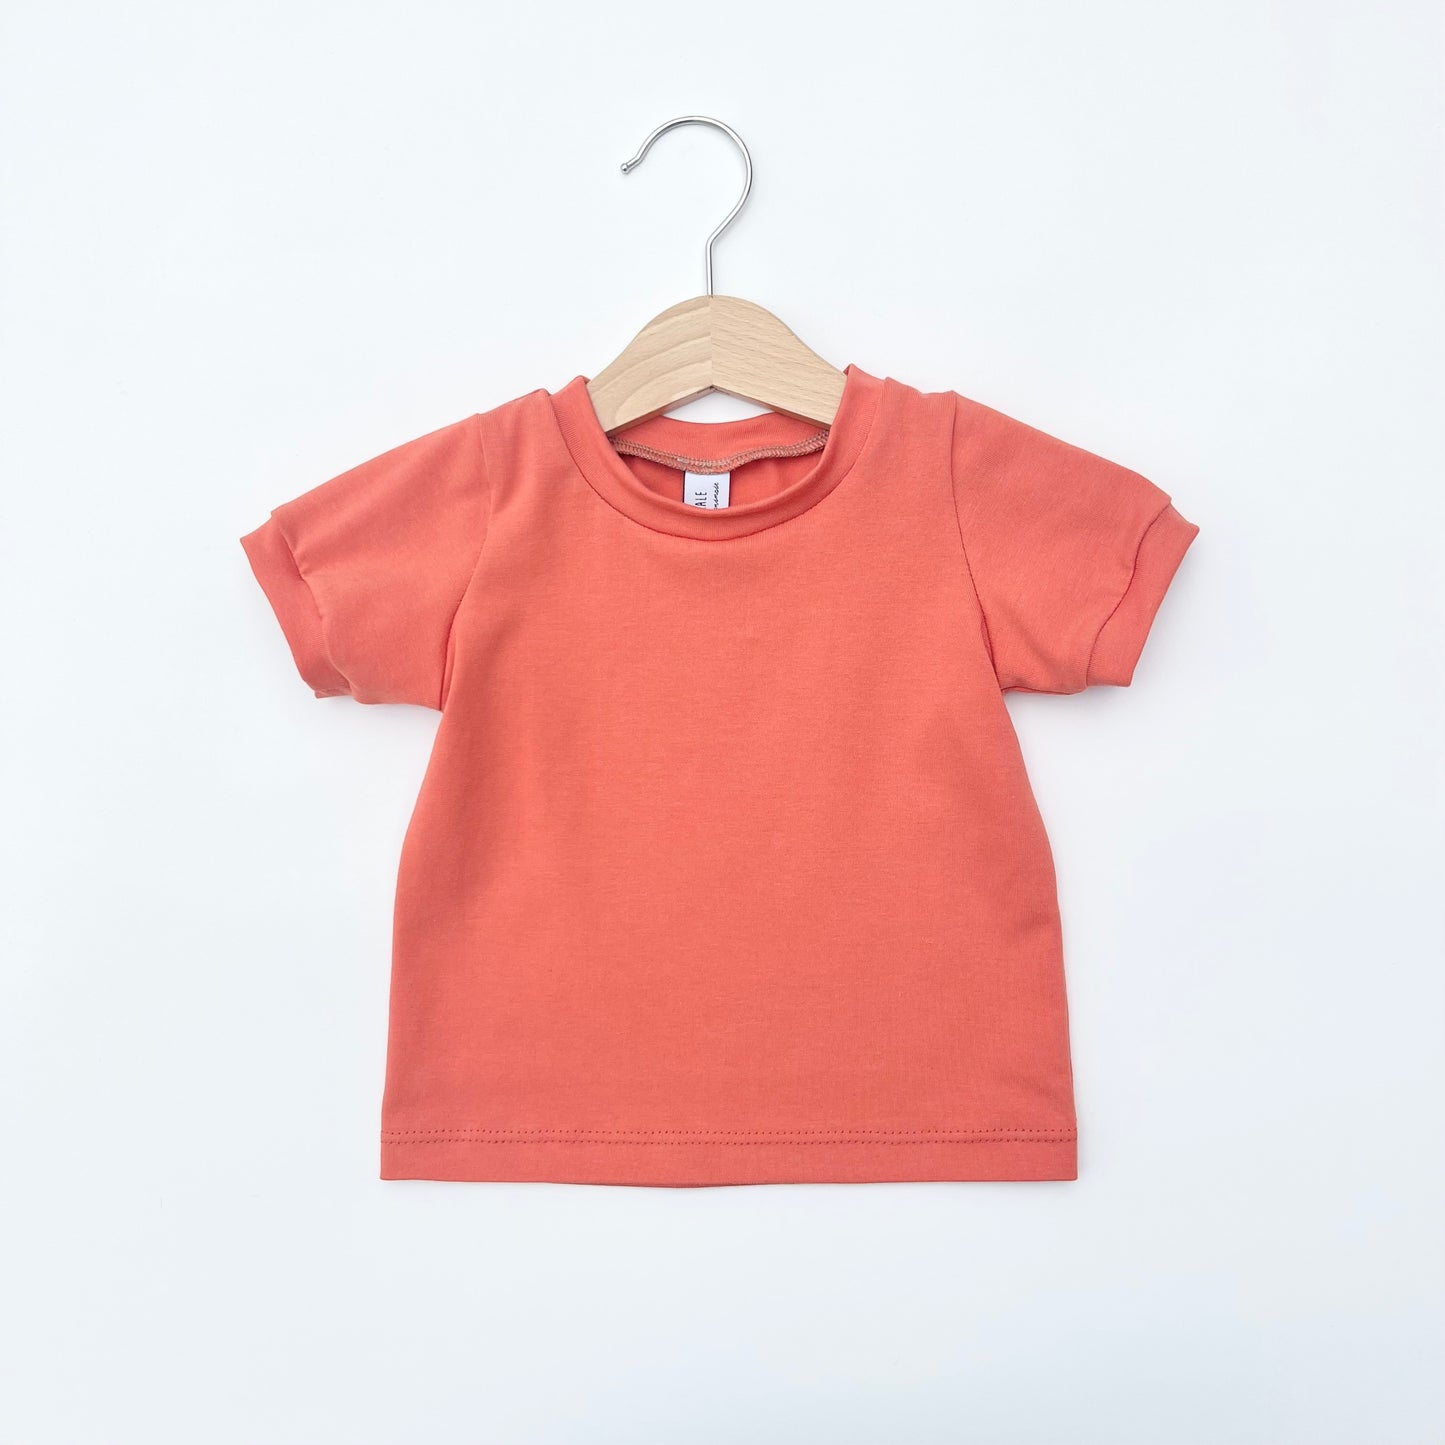 Ginger T-shirt - Long or Short Sleeve